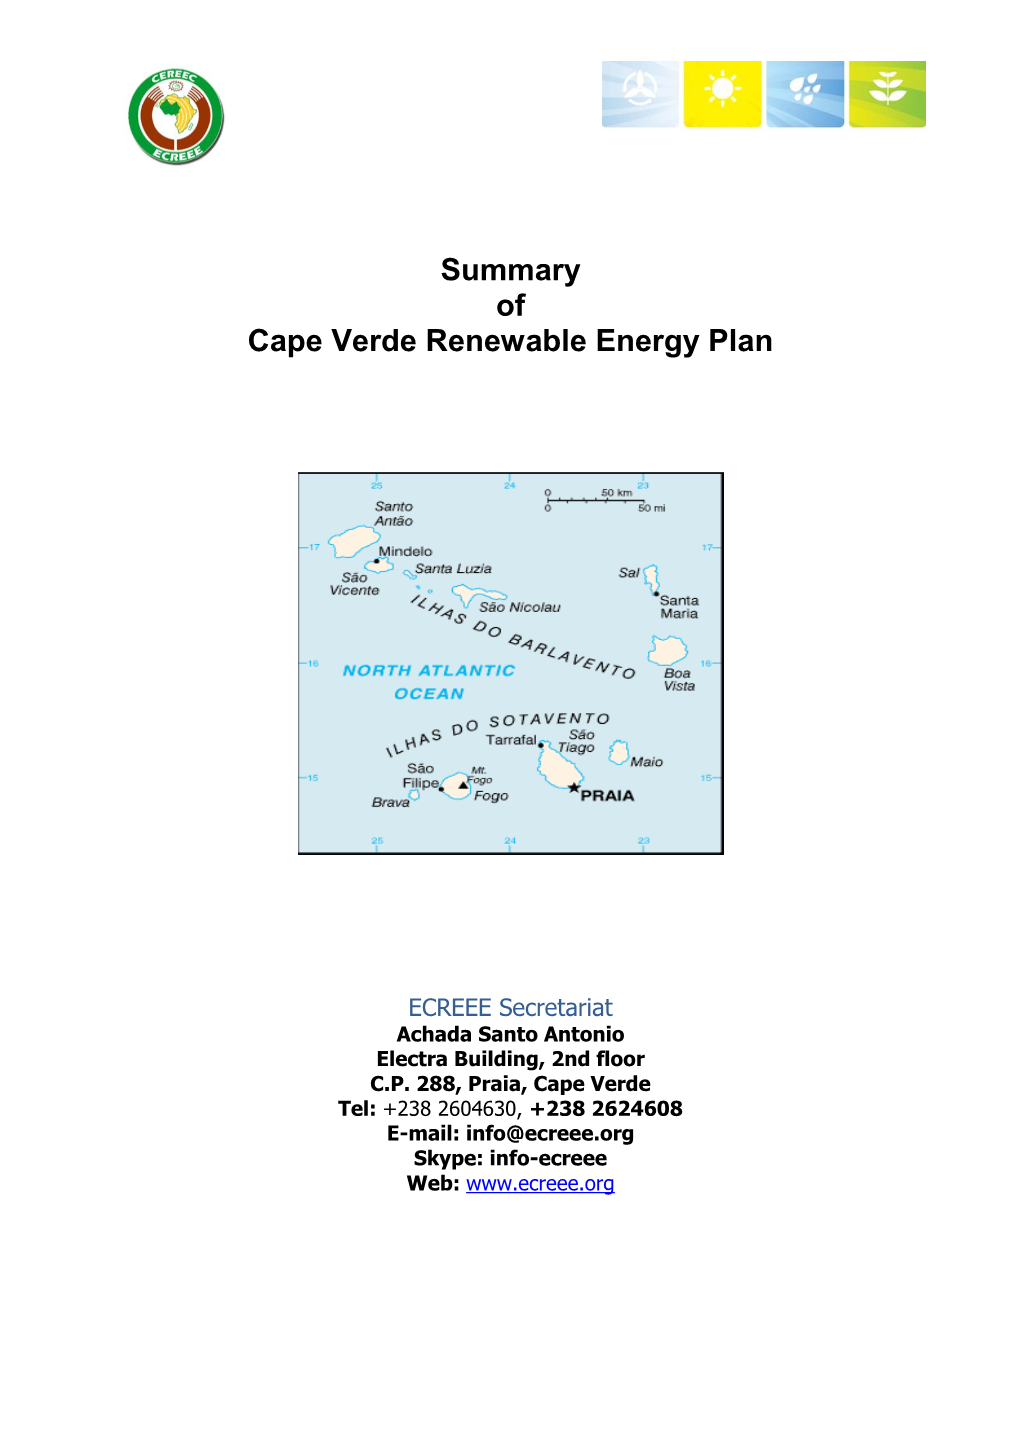 Summary of Cape Verde Renewable Energy Plan